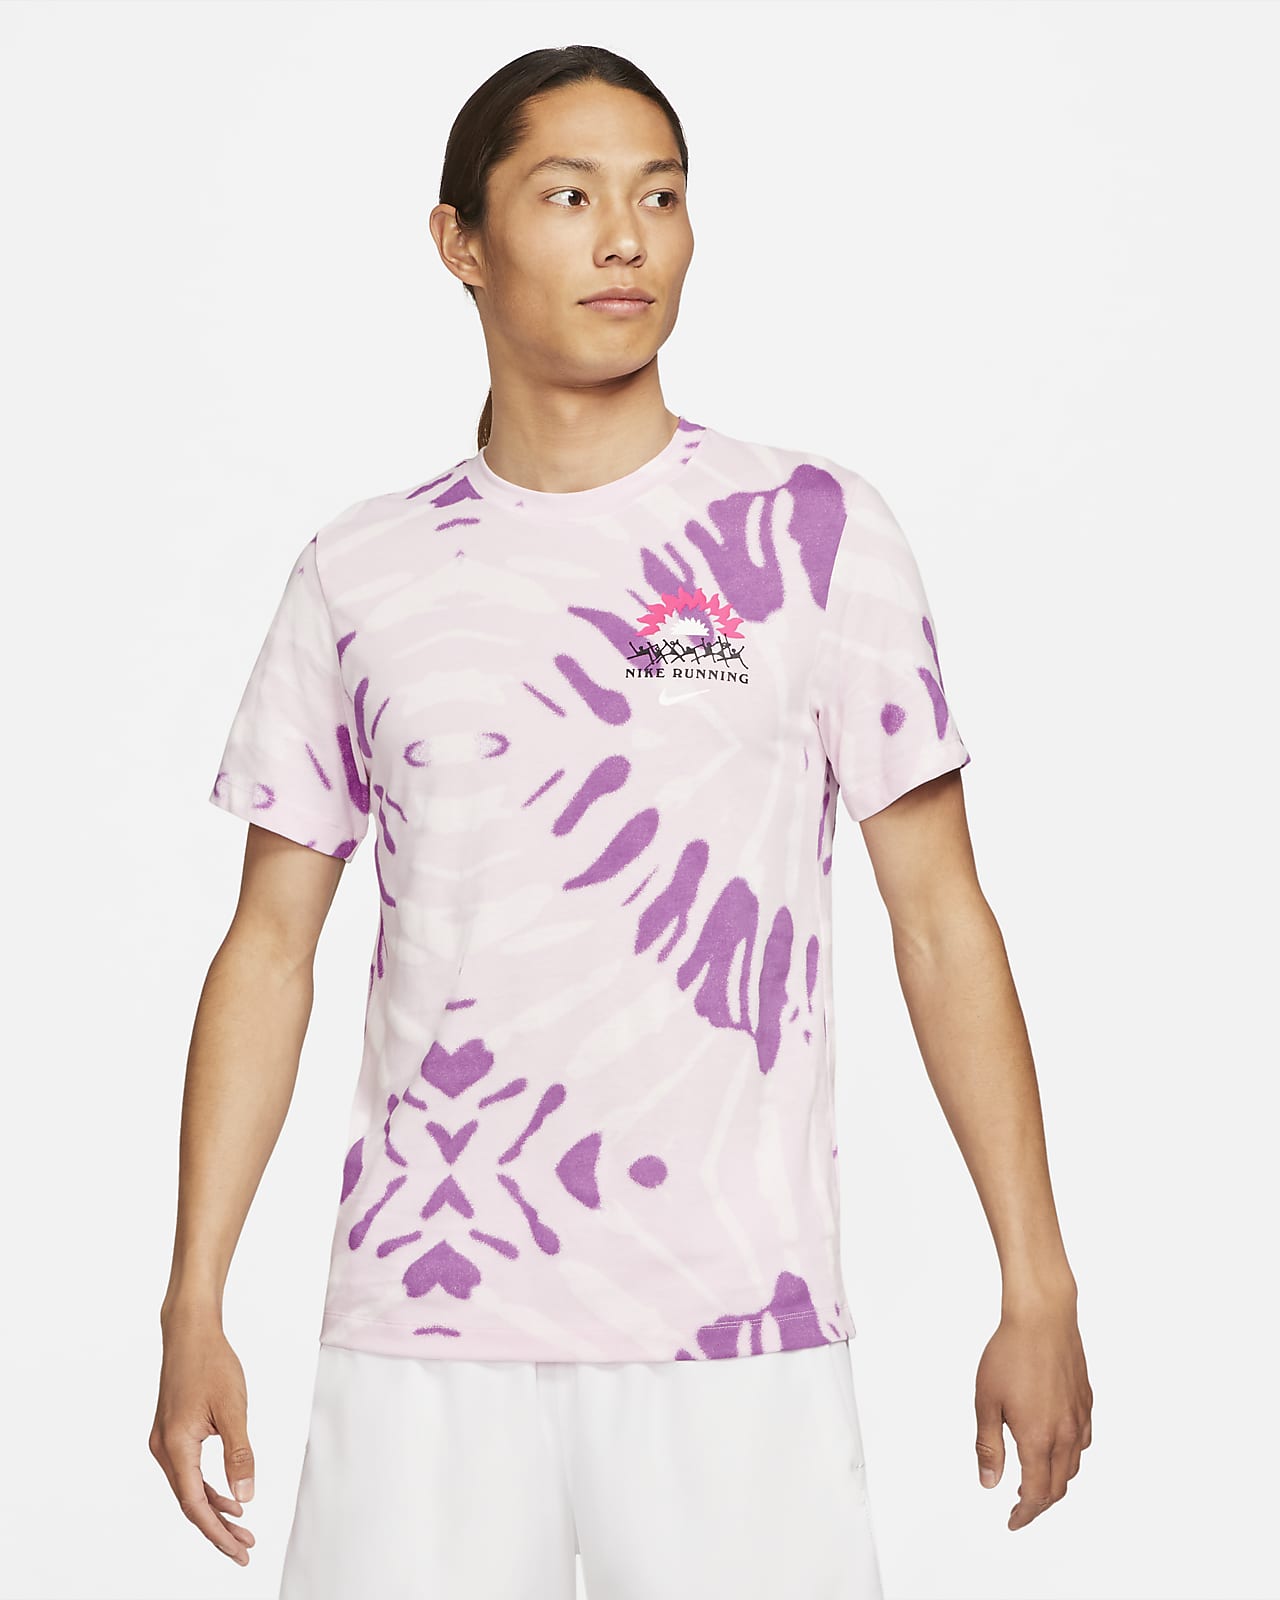 Nike公式 ナイキ Dri Fit メンズ ランニング Tシャツ オンラインストア 通販サイト